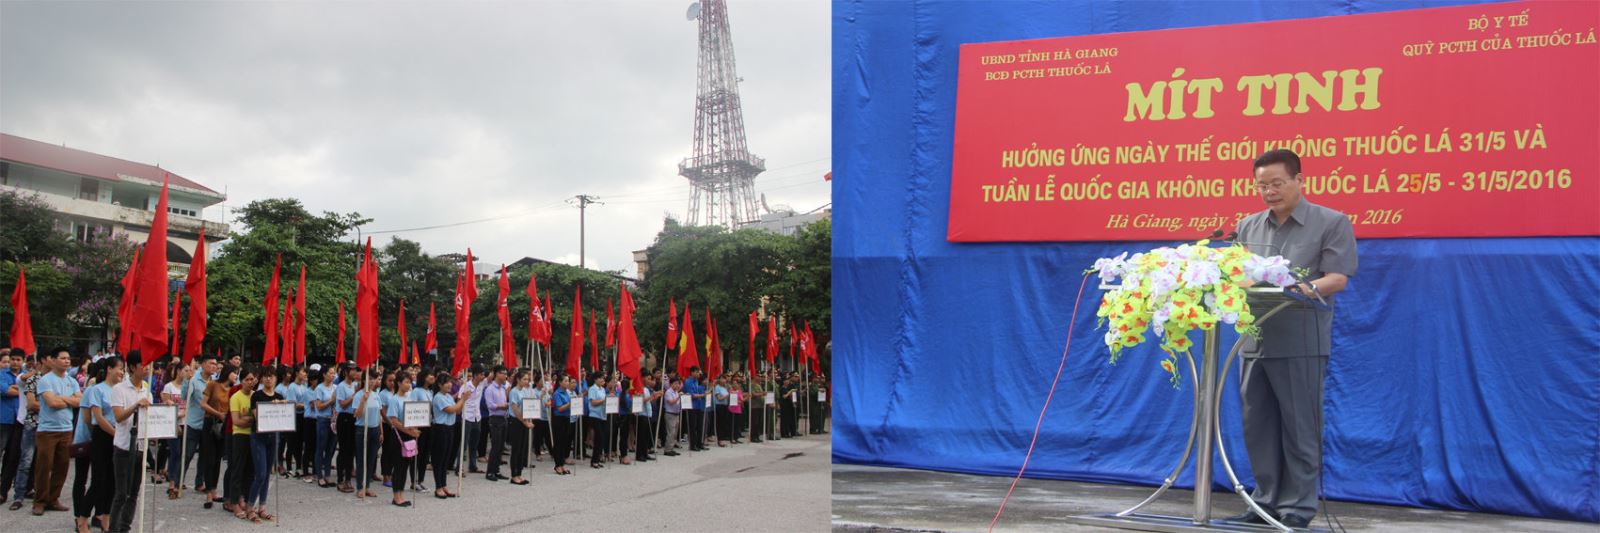 Đồng chí Nguyễn Văn Sơn, Phó Bí thư Tỉnh ủy, Chủ tịch UBND tỉnh phát biểu chỉ đạo tại Lễ mít tinh